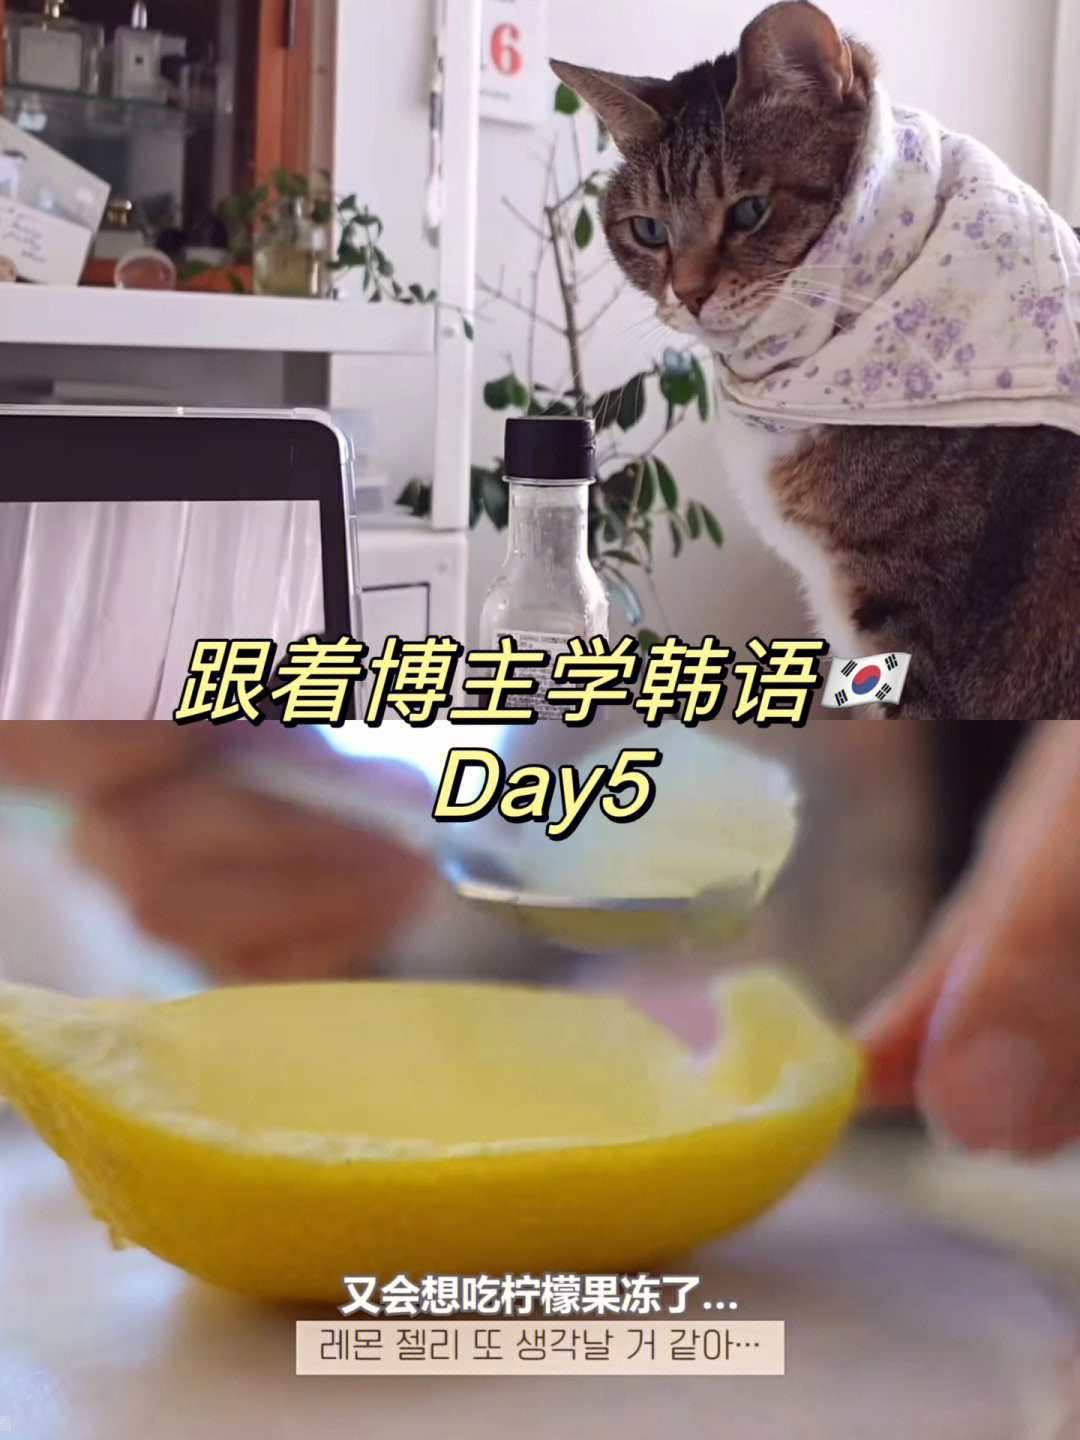 治愈柠檬果冻烤箱用韩语怎么说